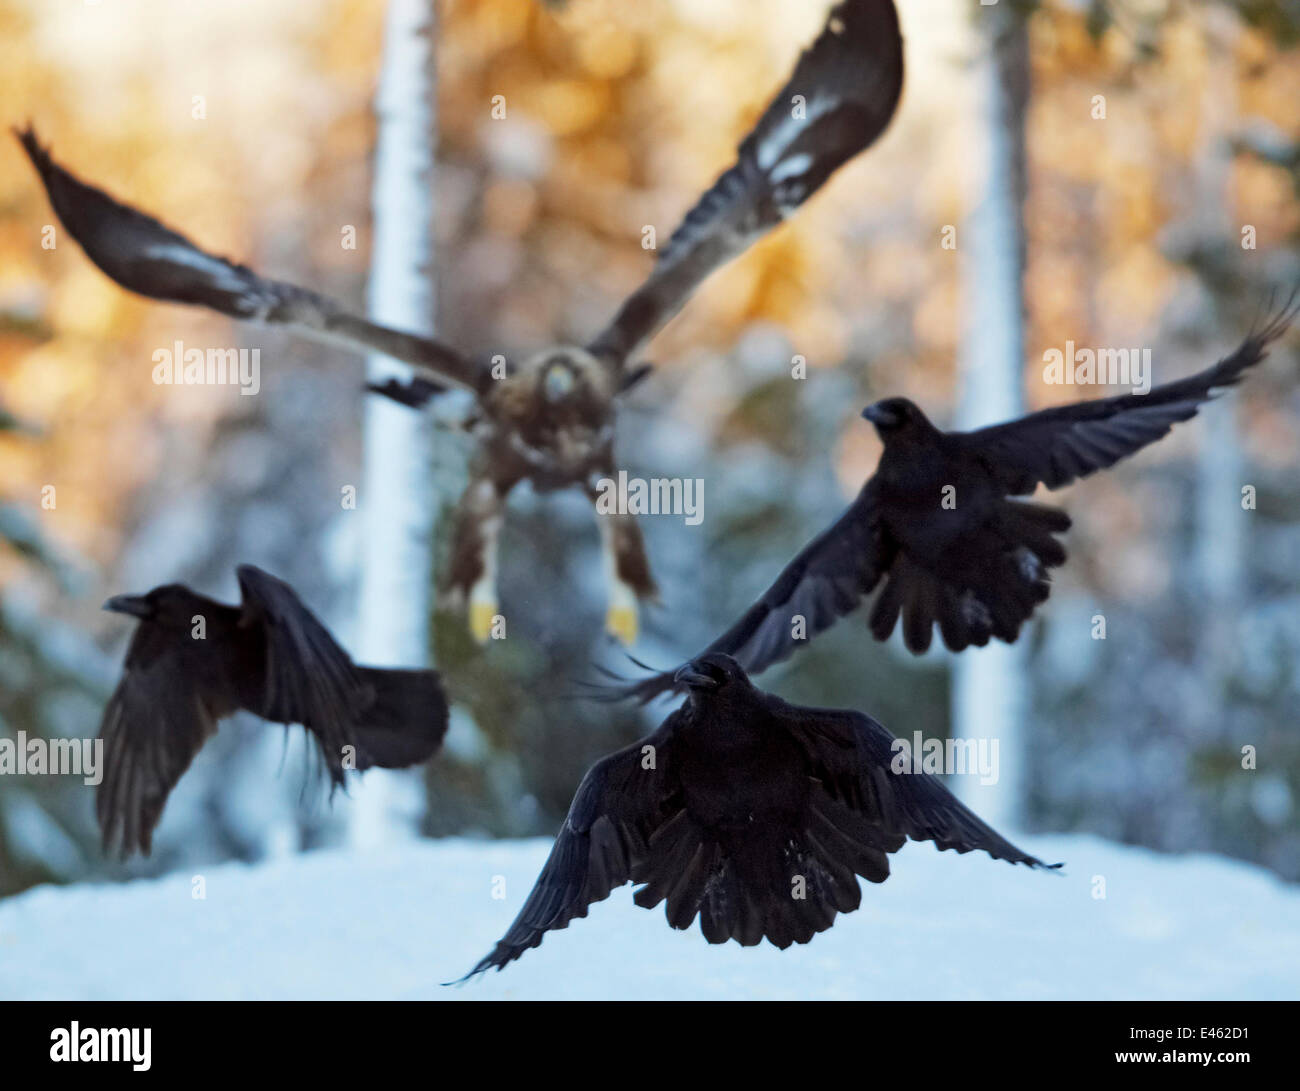 Águila Real (Aquila chrysaetos) persiguiendo a los cuervos (Corvus corax) por encima de la nieve. Utajsrvi, Finlandia, Enero. Momentos mágicos ex libris, página 134. Foto de stock